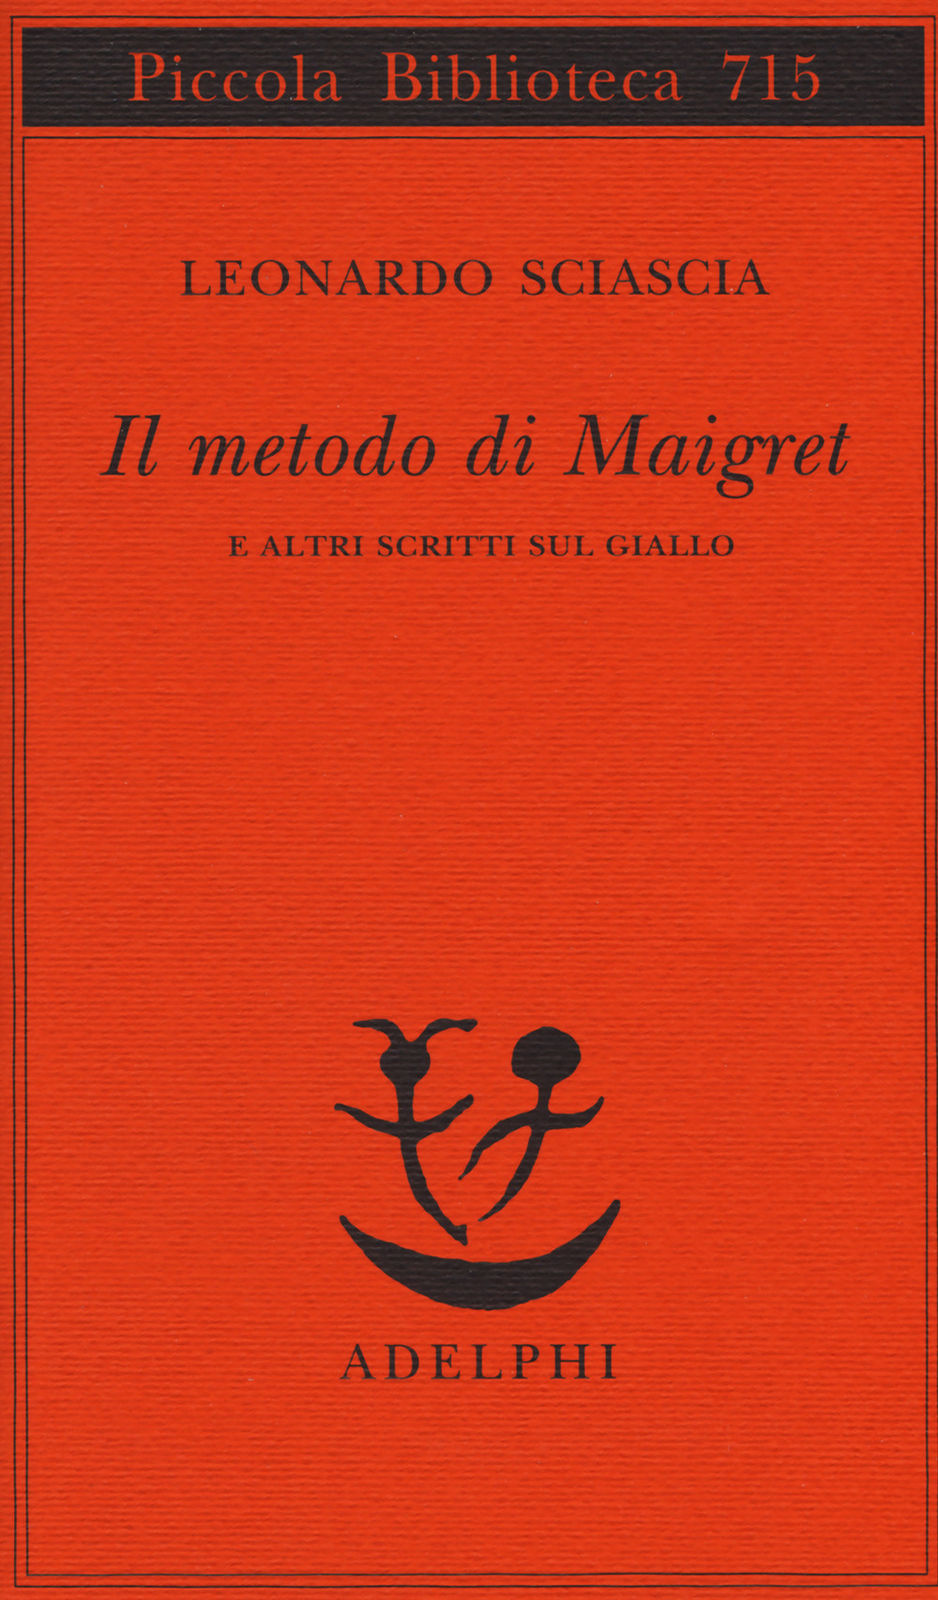 Il metodo di Maigret e altri scritti sul giallo di Leonardo Sciascia, Adelphi, 2018 – Recensione